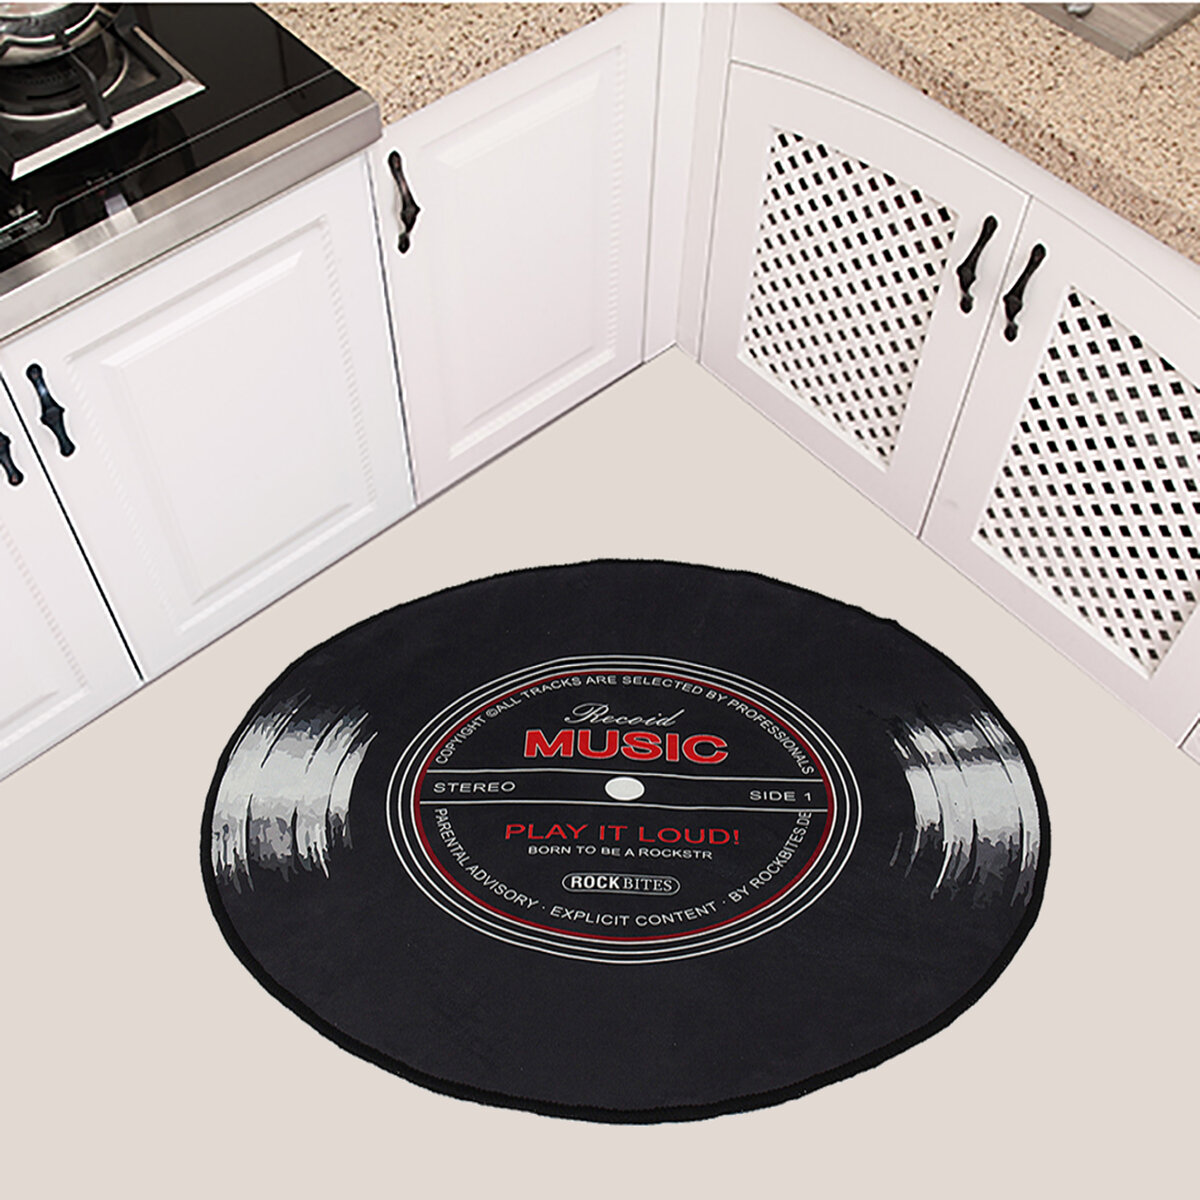 60-120cm Retro Music CD Record Printed Soft Round Floor Mat Room Area Carpet Rug